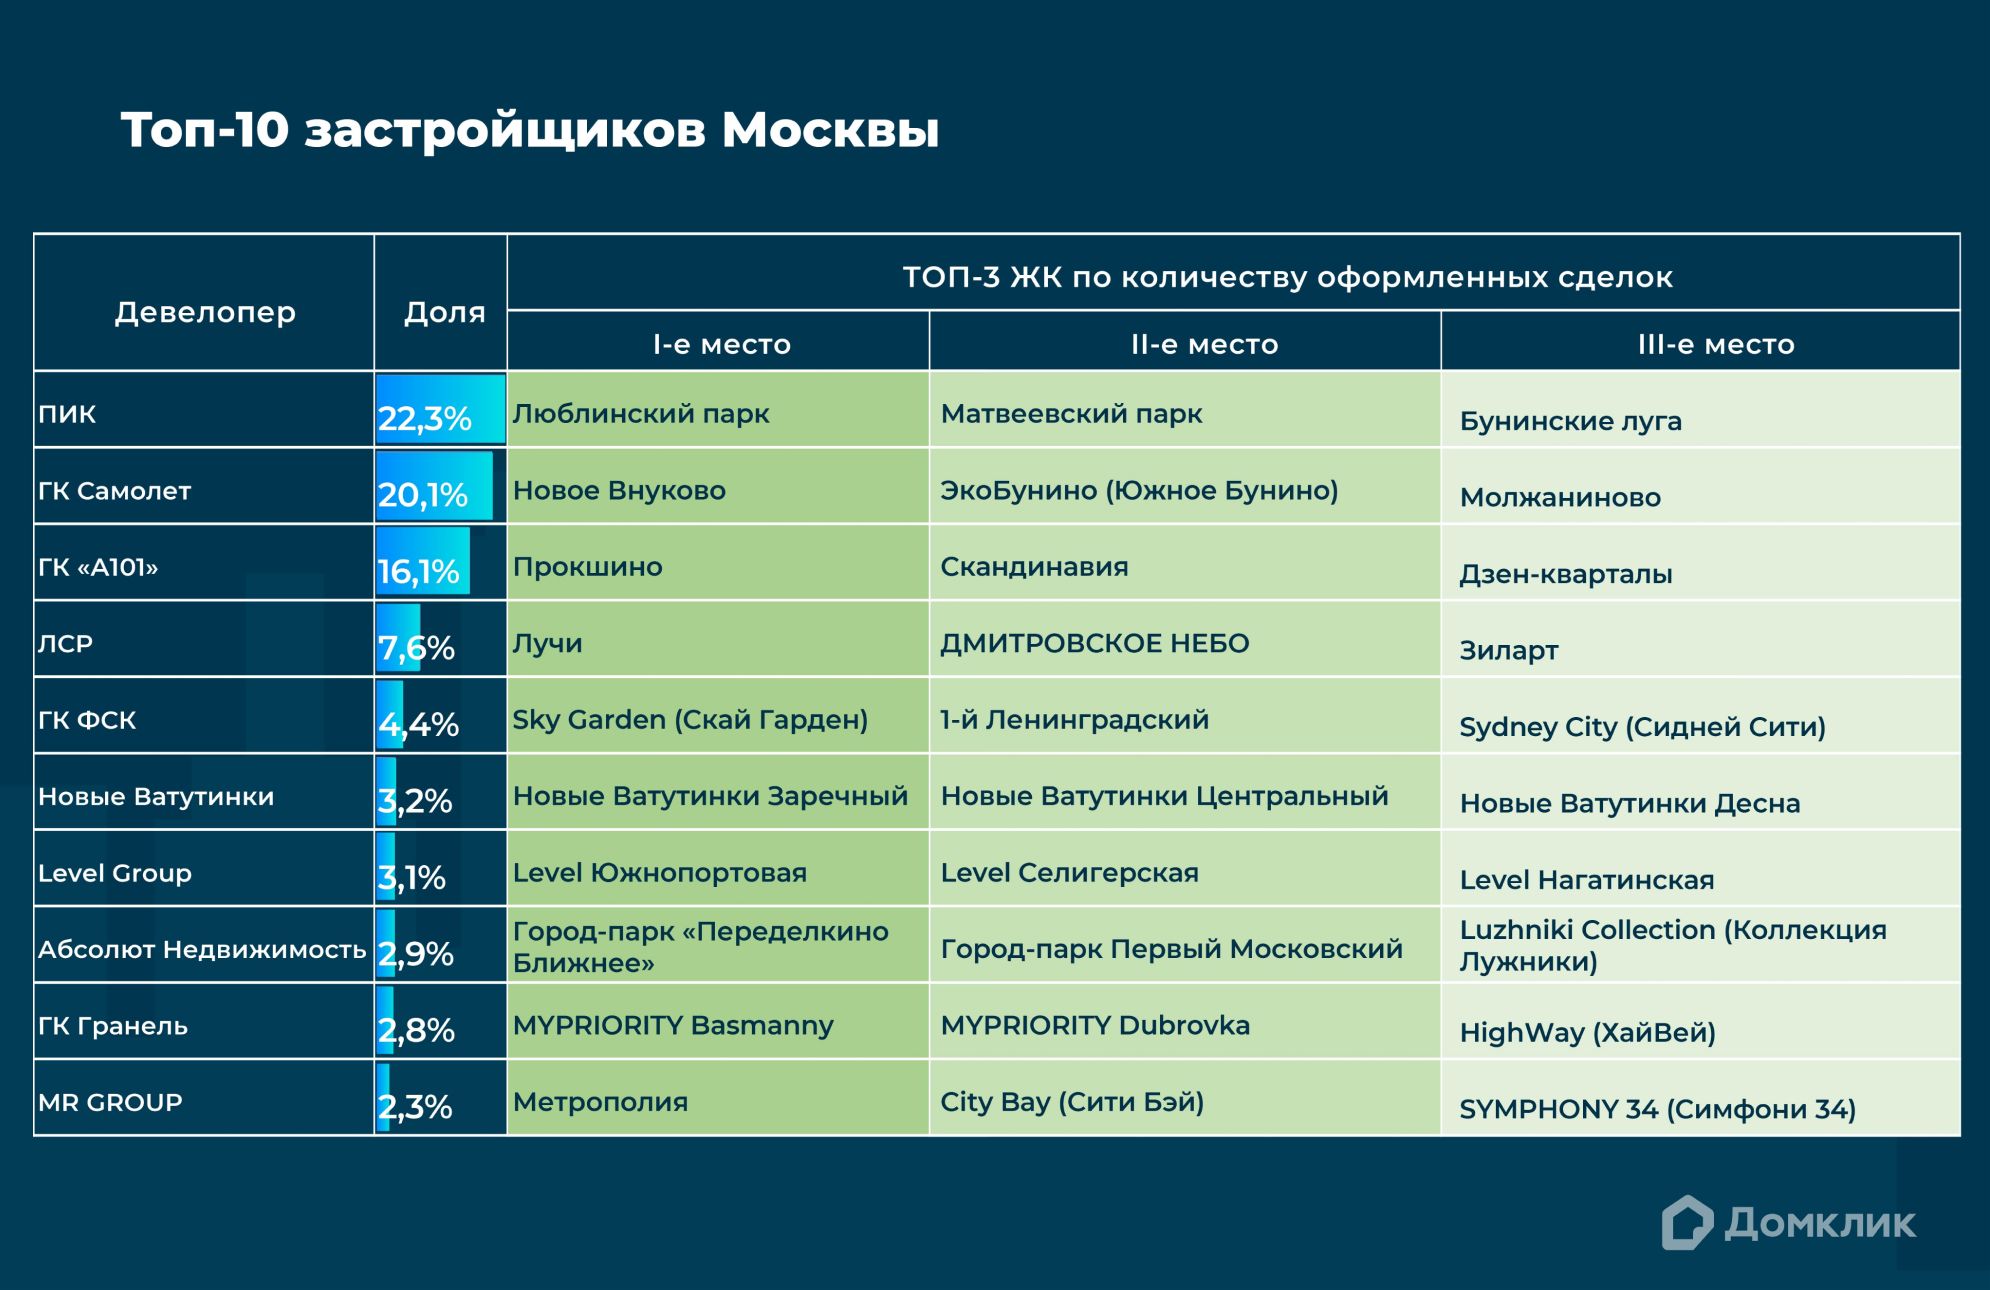 Топ-10 девелоперов Москвы по количеству сделок, проведенных с участием Сбербанка, включая сделки за свои средства.